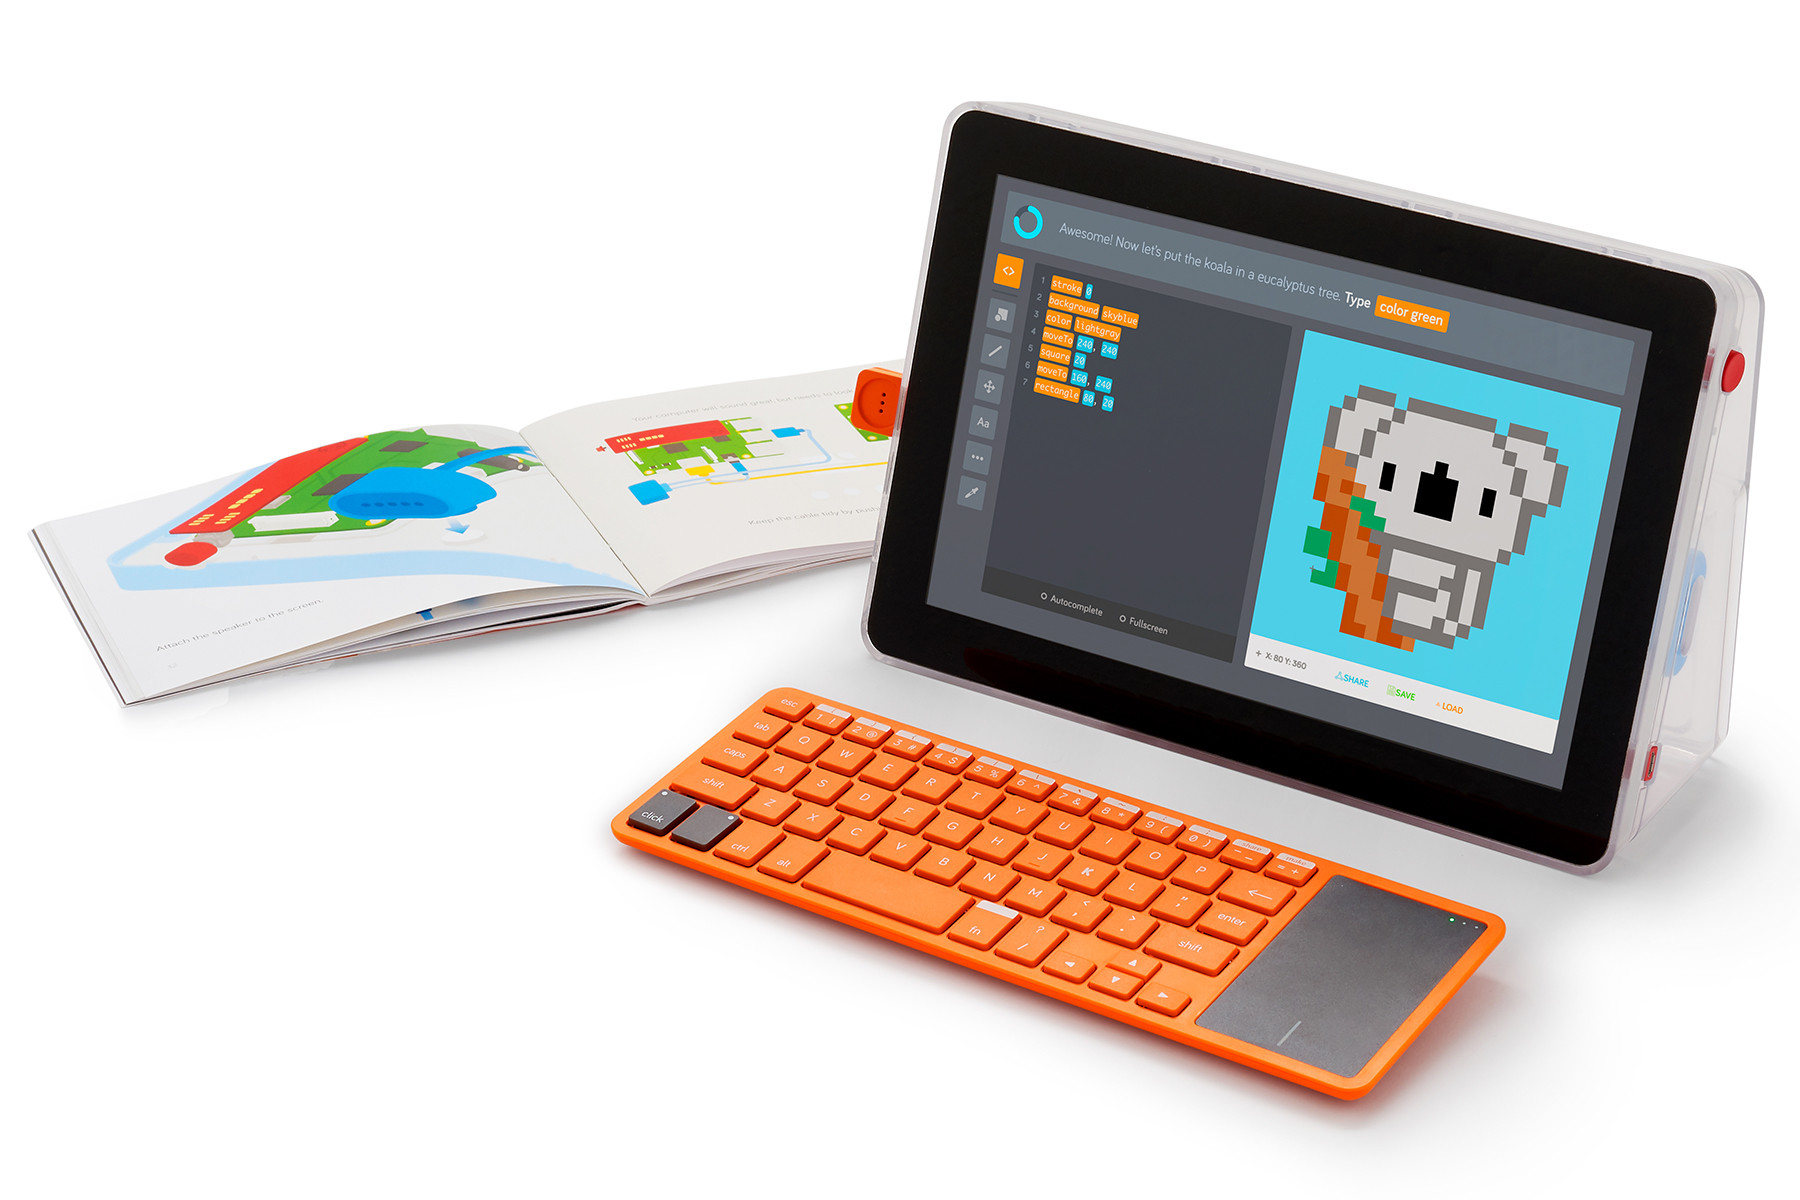 DIY Computer Kits
 Kano bines its coding kits for a DIY laptop